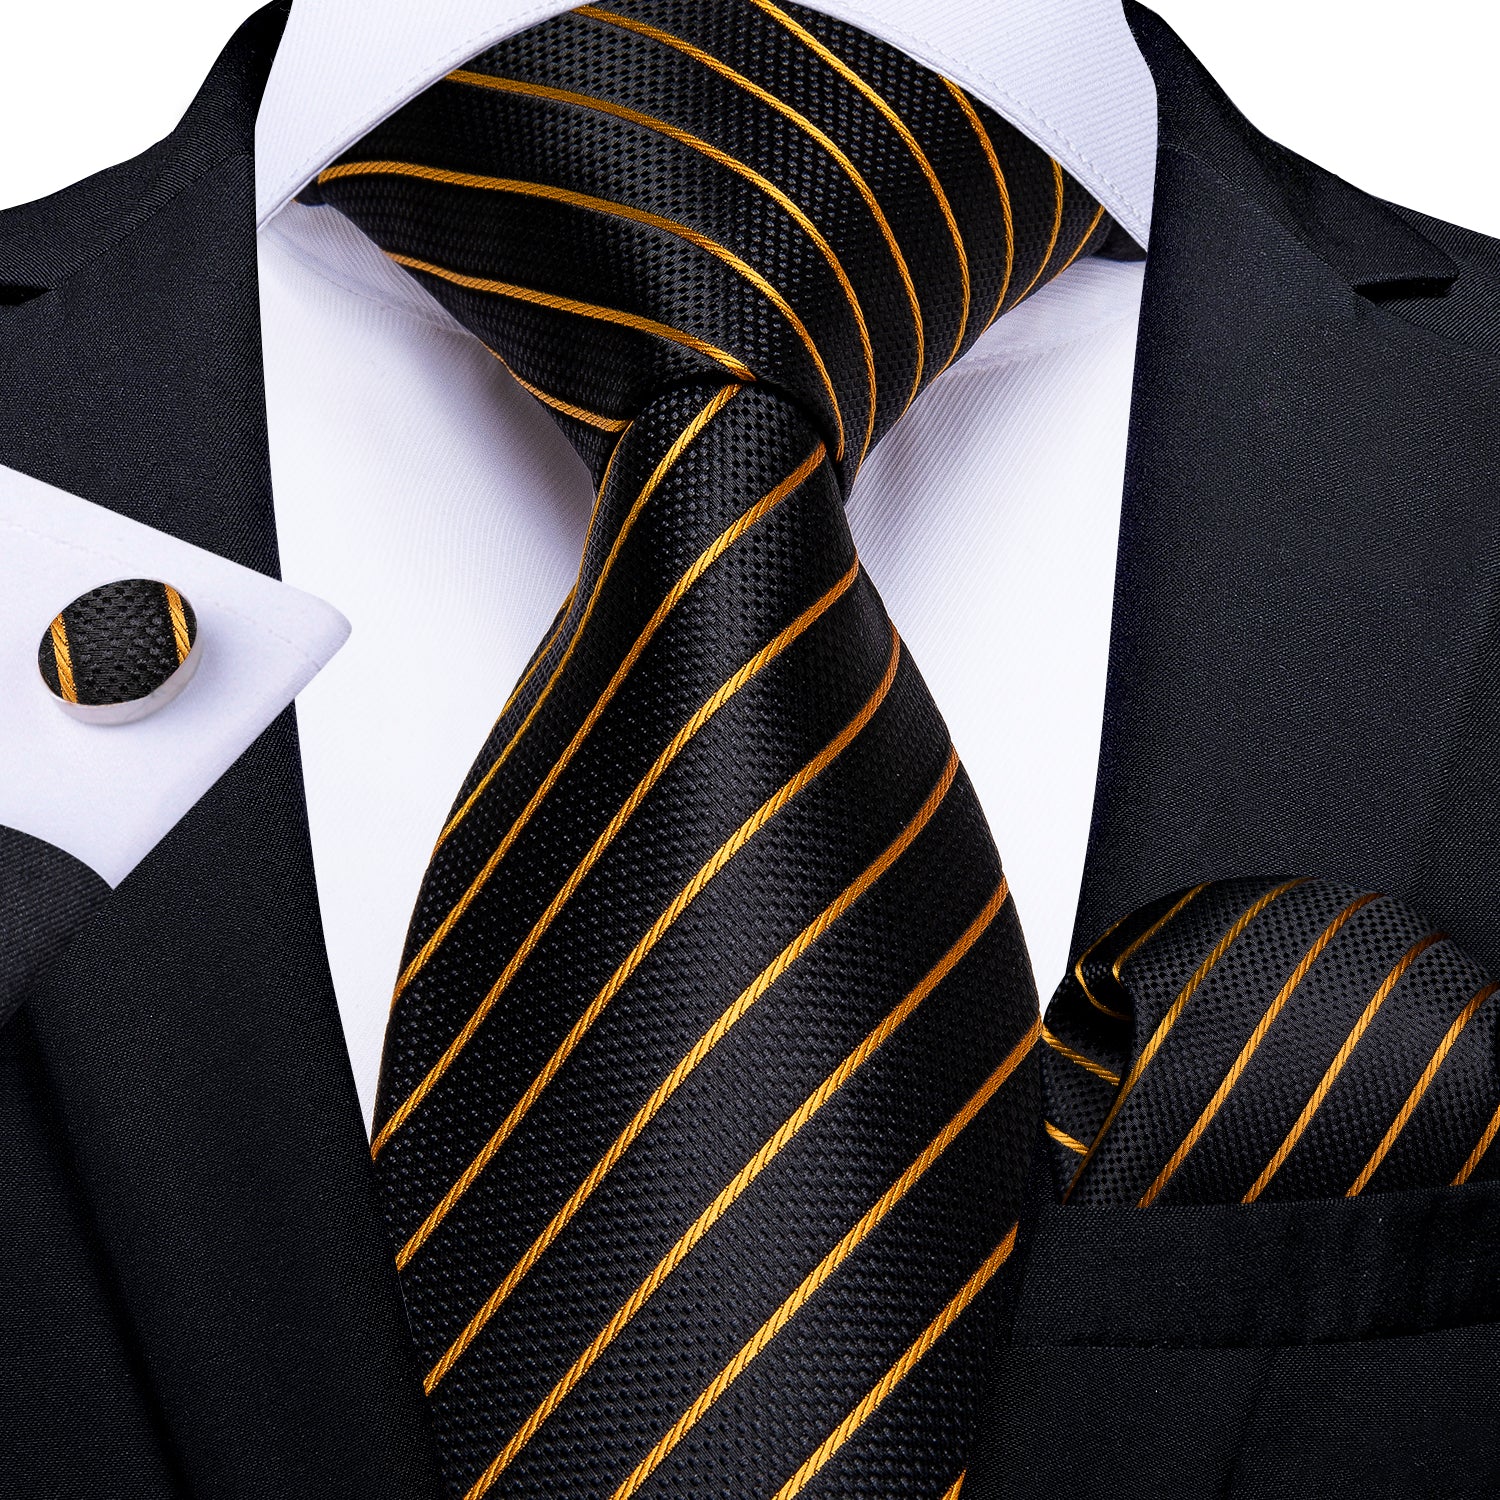 Black Yellow Striped Men's Tie Handkerchief Cufflinks Set – DiBanGuStore